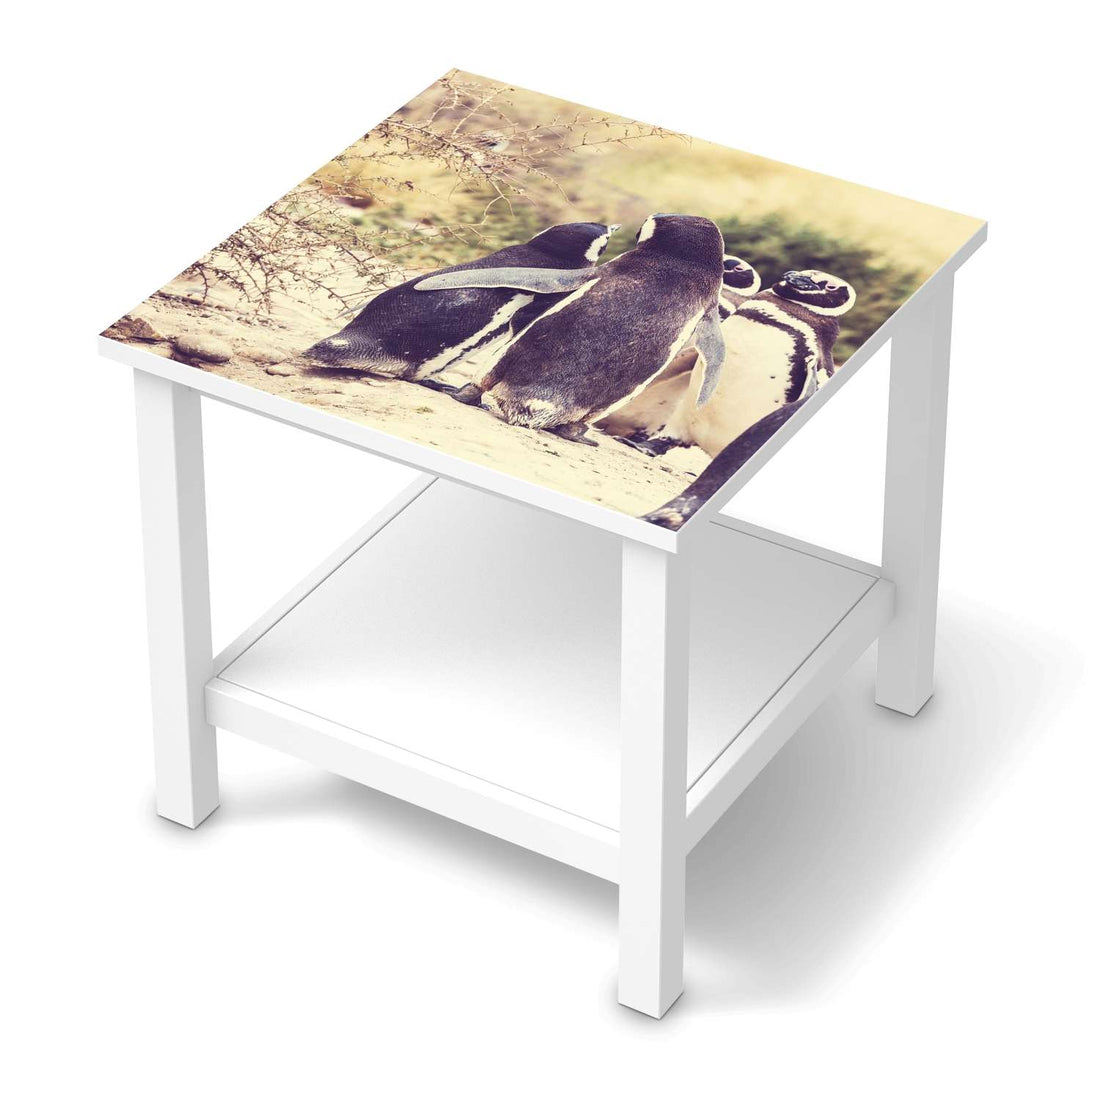 Möbel Klebefolie Pingu Friendship - IKEA Hemnes Beistelltisch 55x55 cm  - weiss